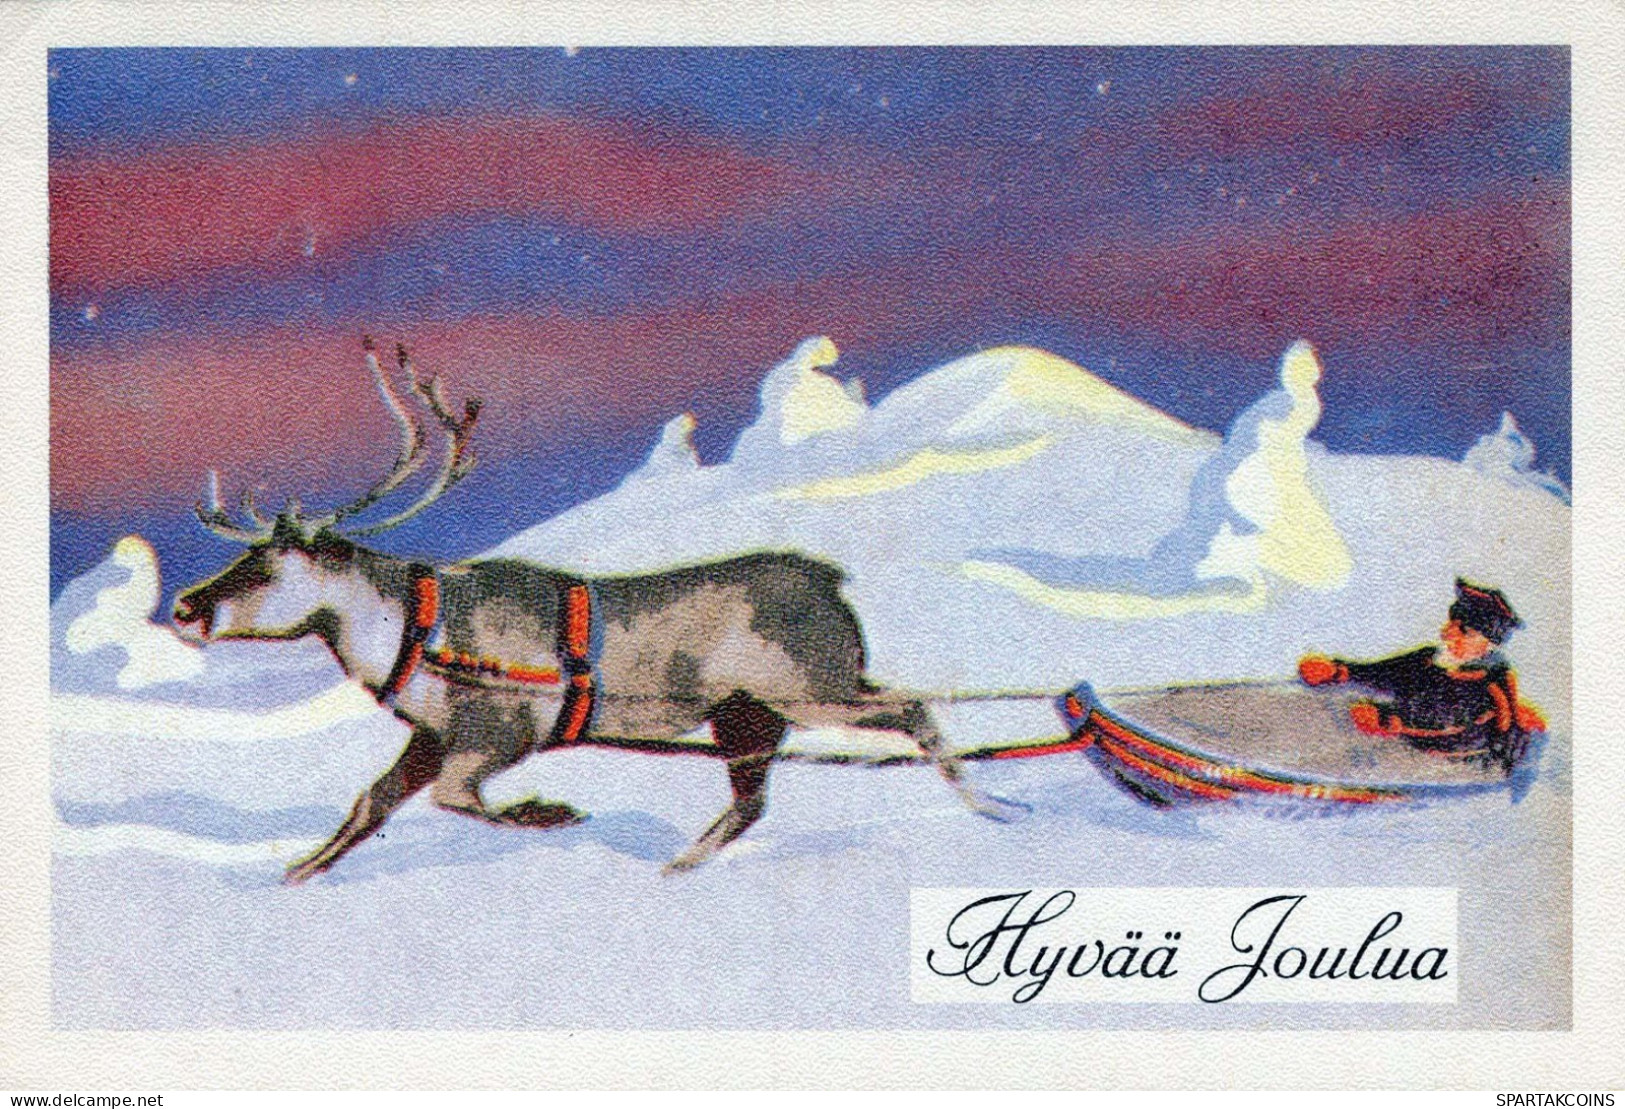 BABBO NATALE Buon Anno Natale GNOME Vintage Cartolina CPSM #PBL715.A - Santa Claus